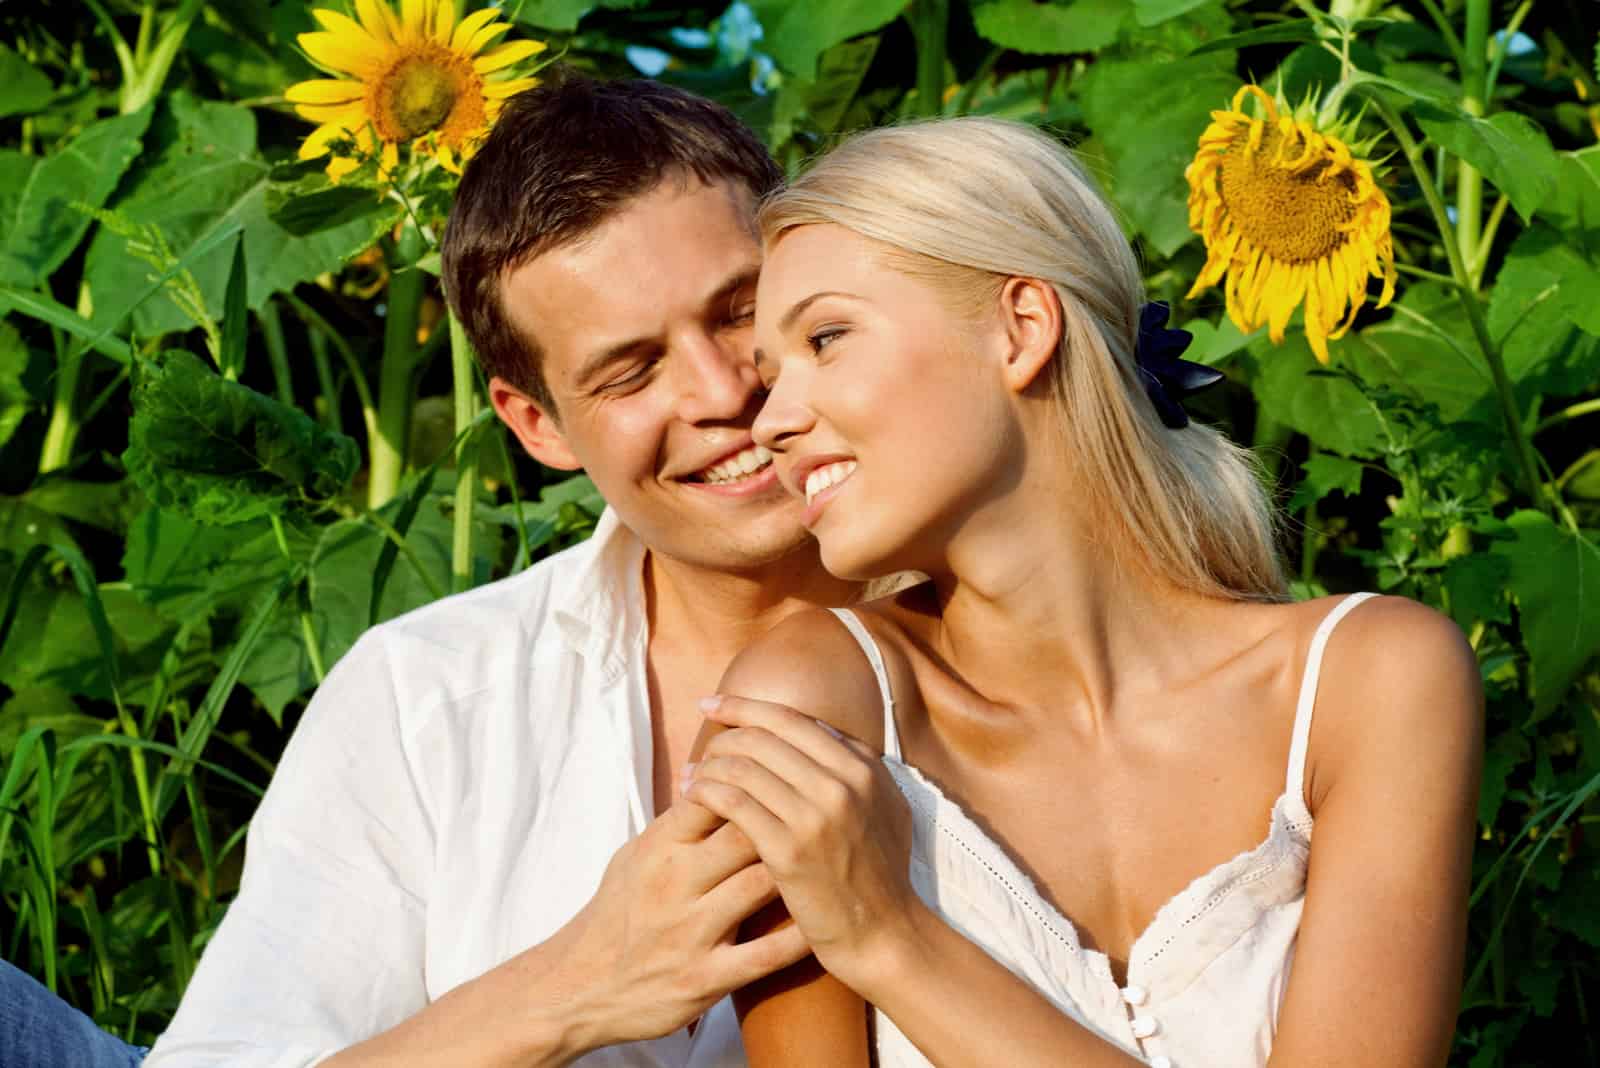 a man hugged a woman in a sunflower field